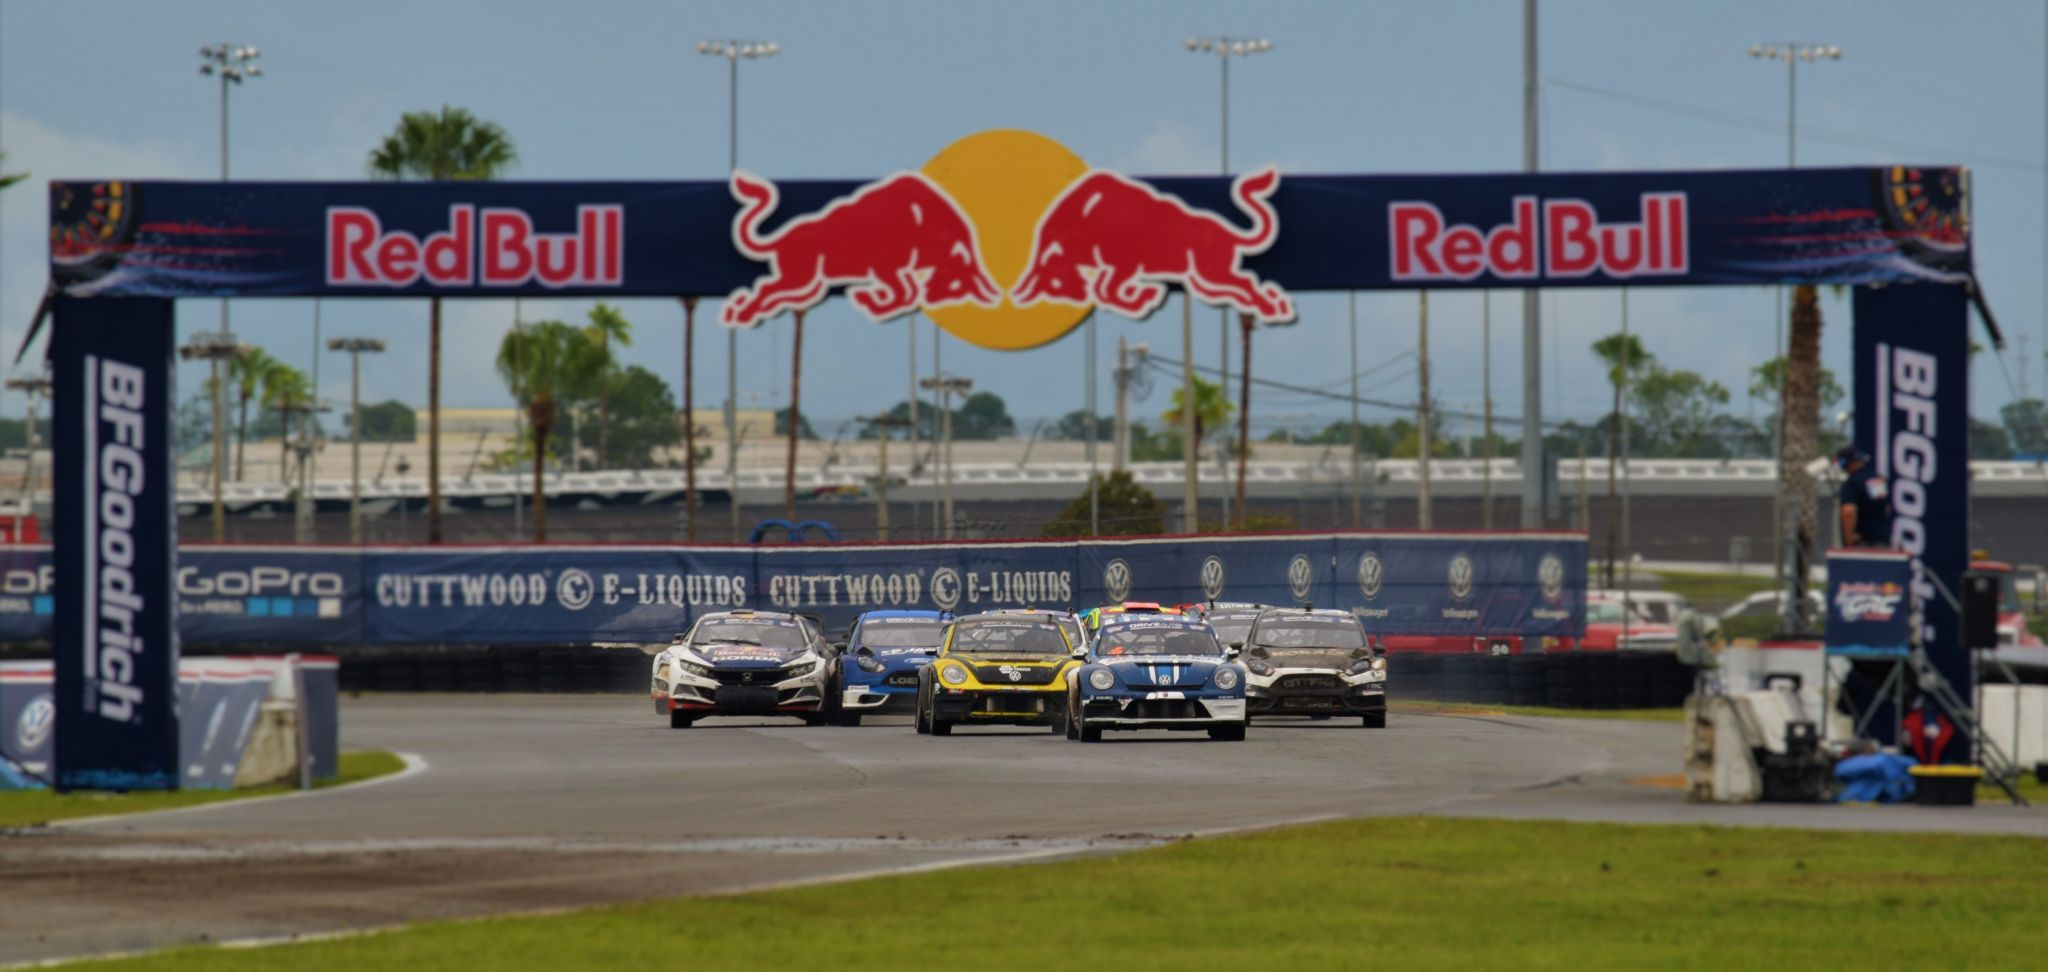 Red Bull Global Rallycross – Daytona Florida